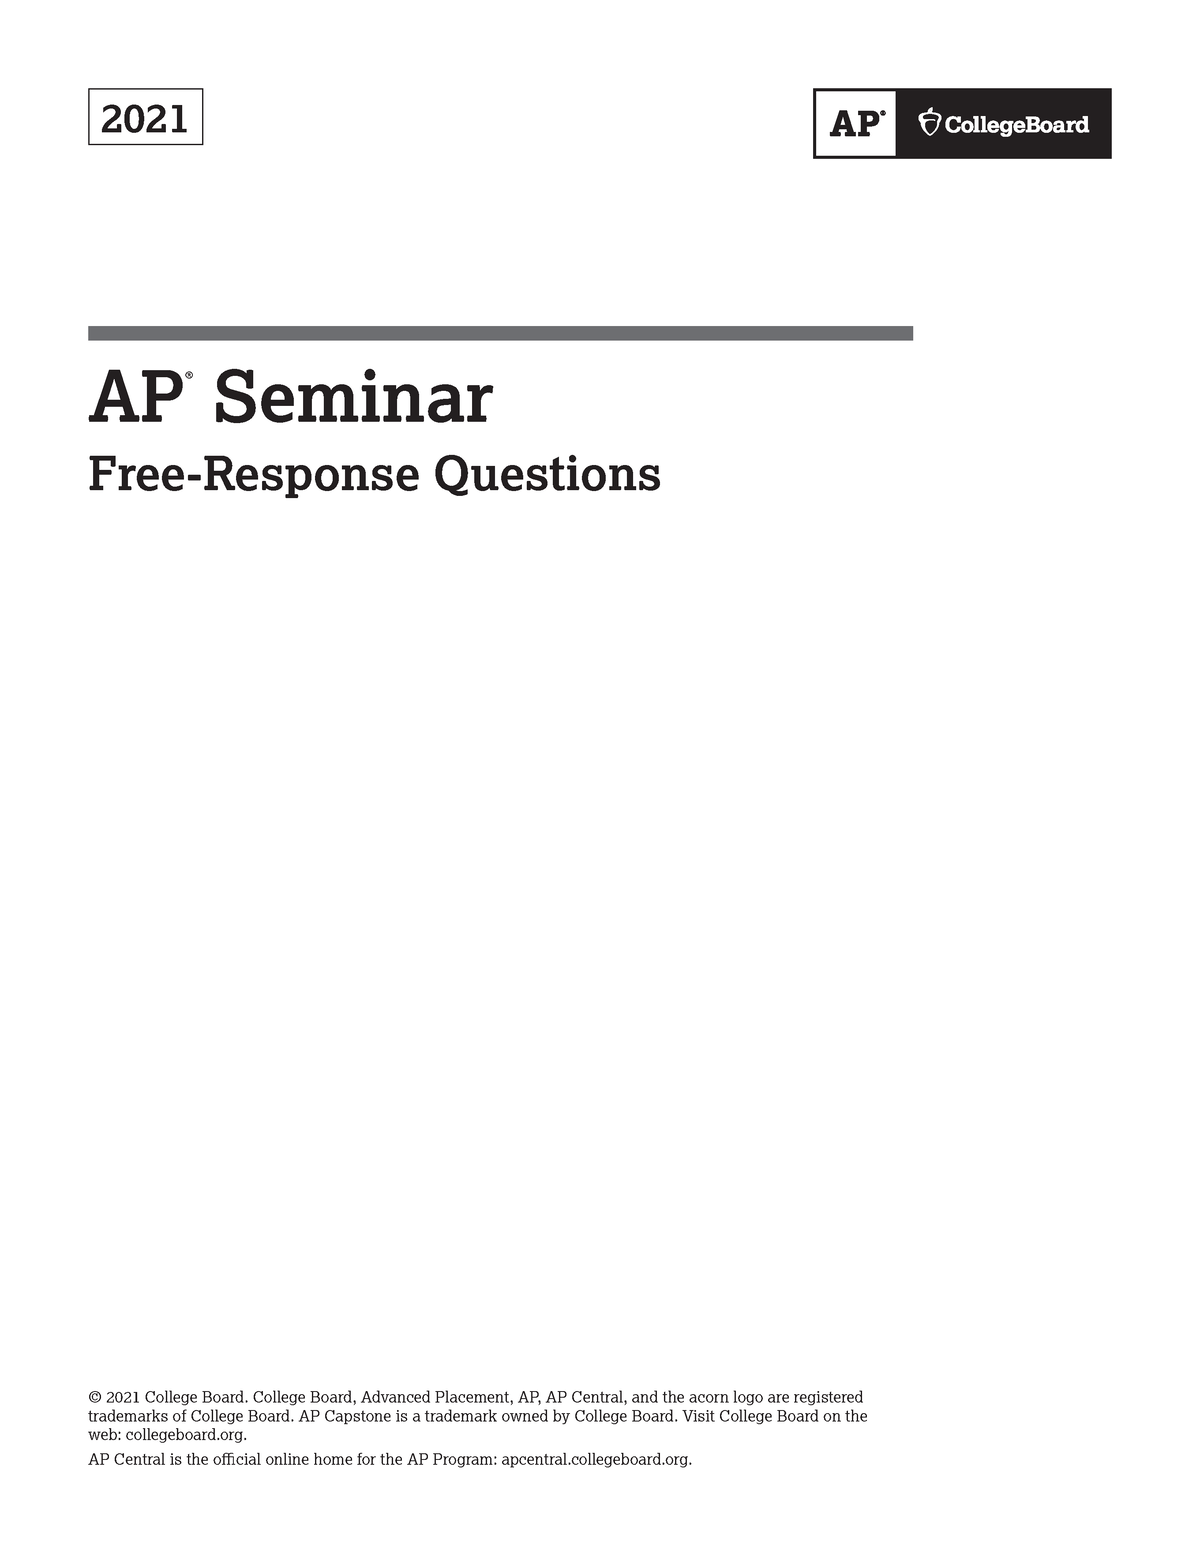 Ap21frqseminar AP Seminar FRQ 2021 BUS 110 Studocu